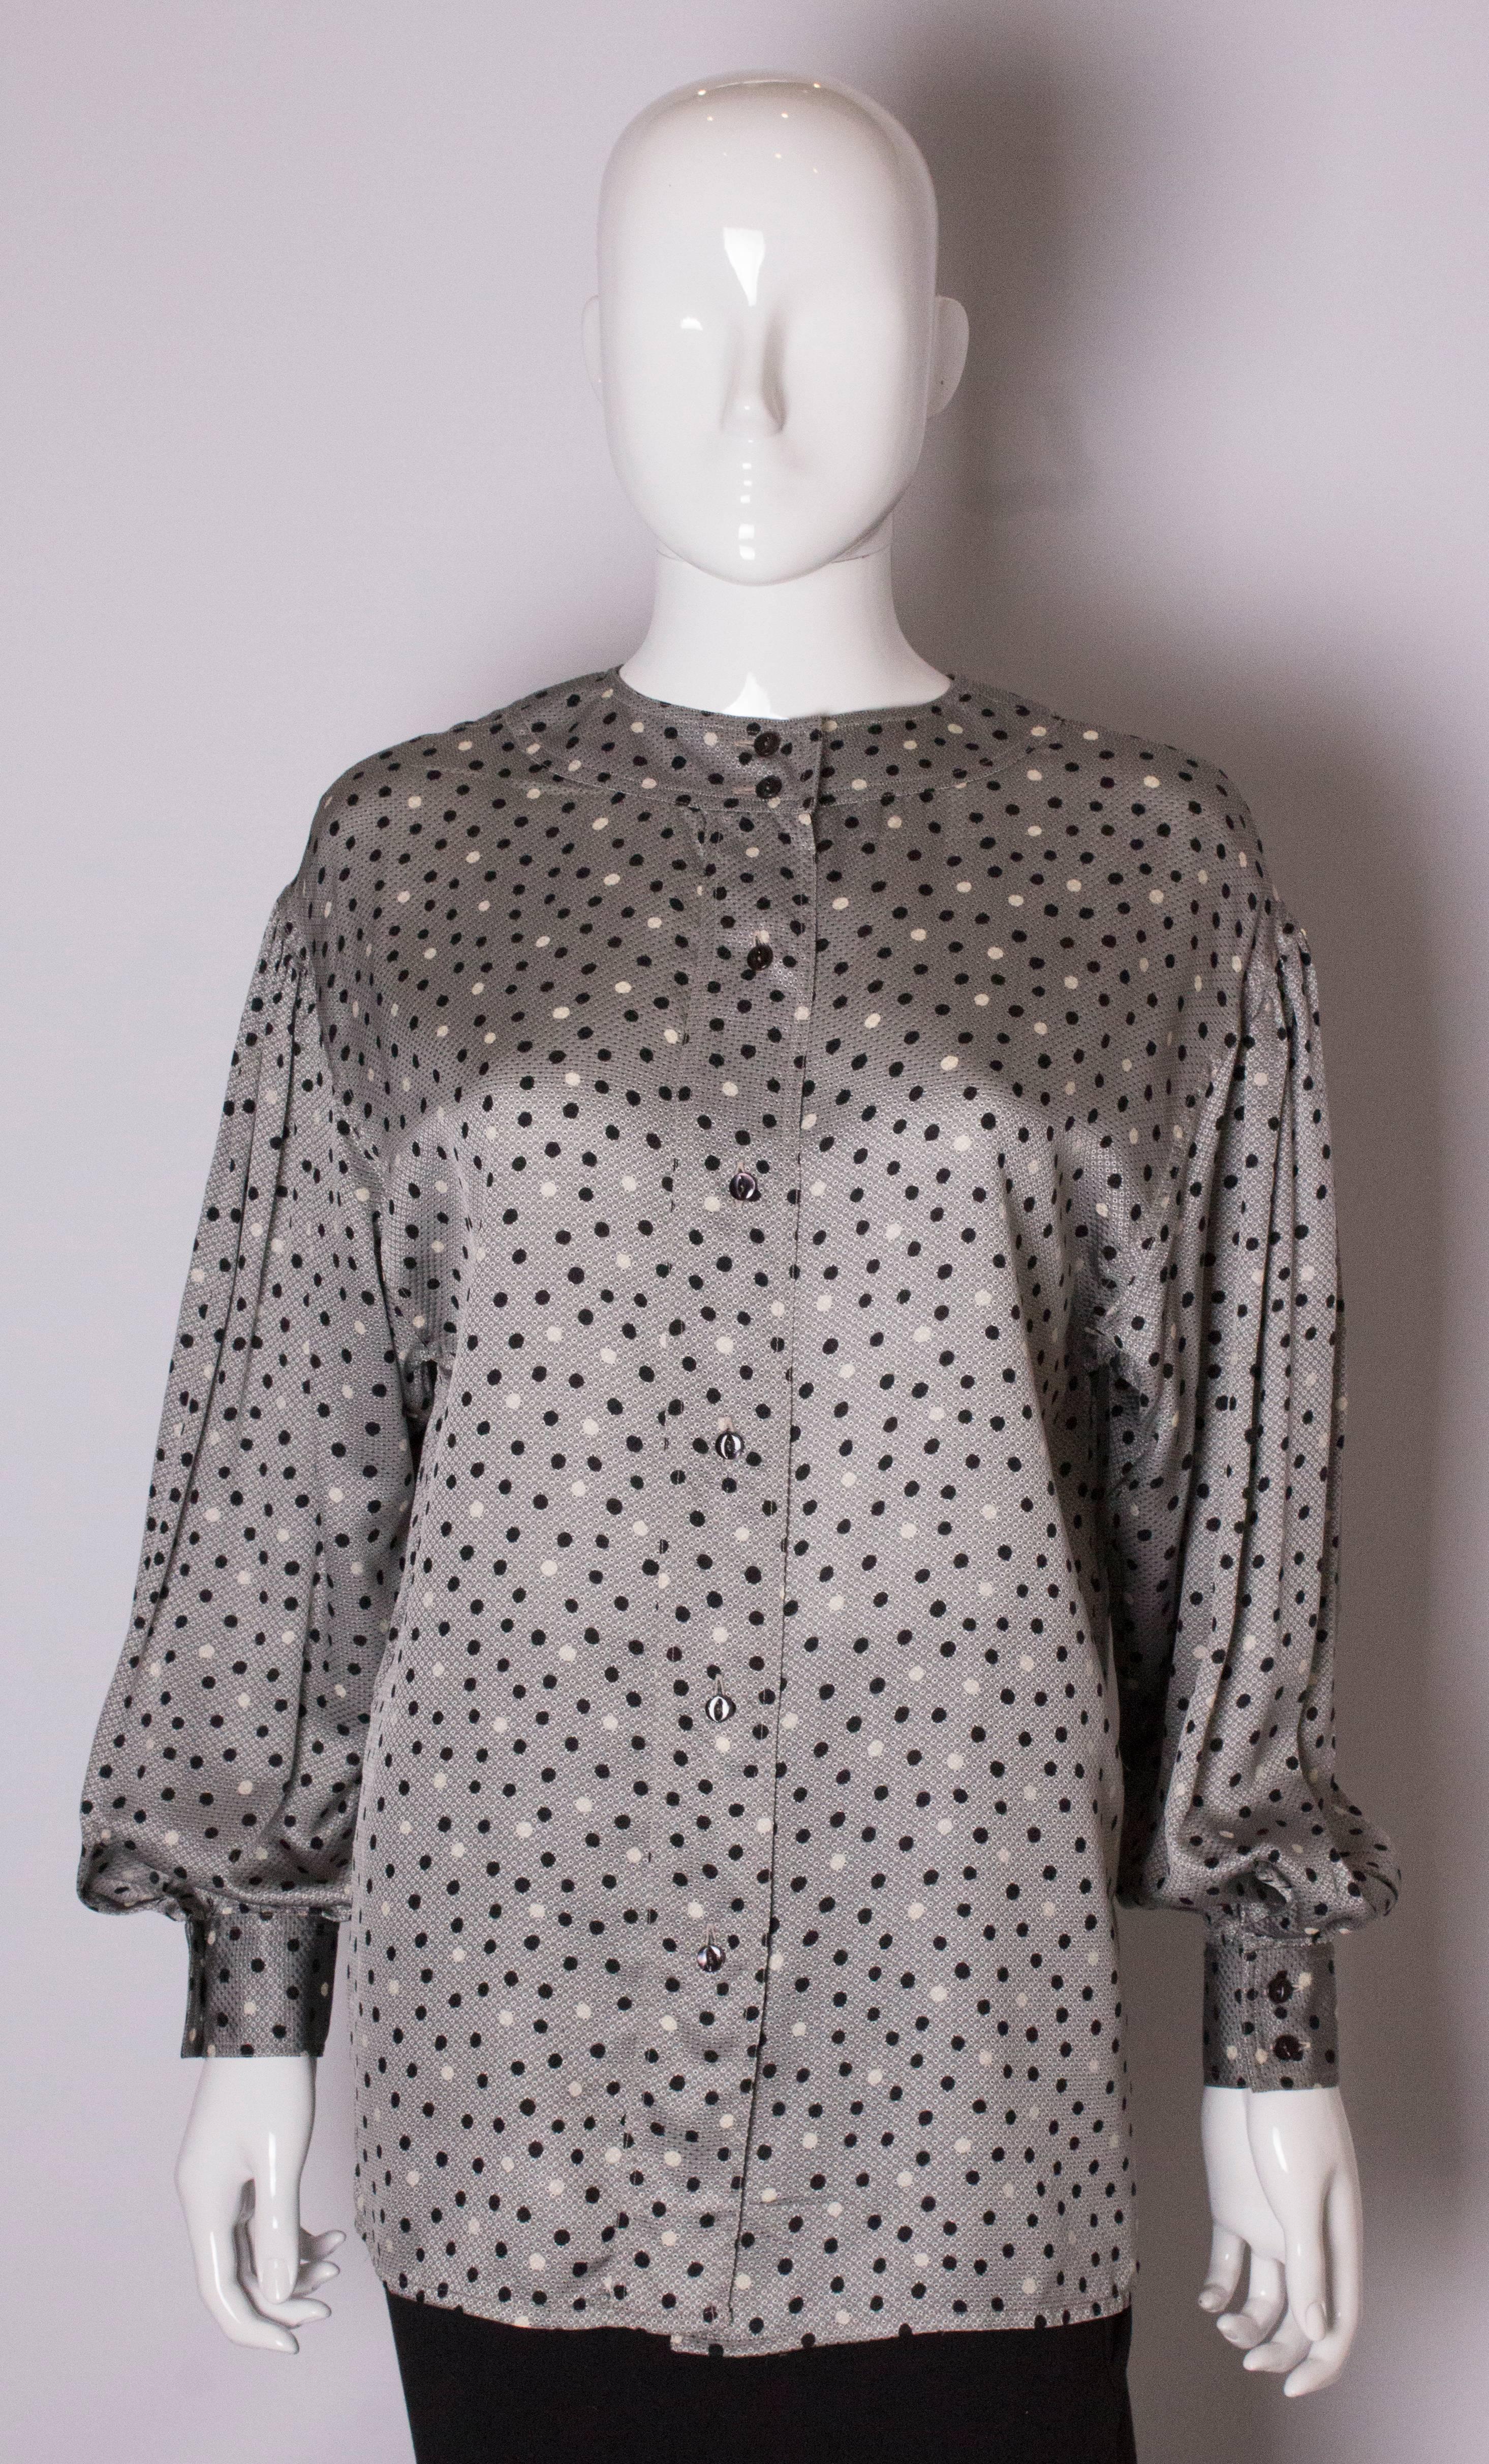 Un chemisier vintage chic de Ferragamo. La blouse a un fond en soie grise et des détails à pois noirs et blancs, avec des poignets à deux boutons, une encolure ronde et une ouverture à boutons dans le dos, avec des rabats sur le devant.